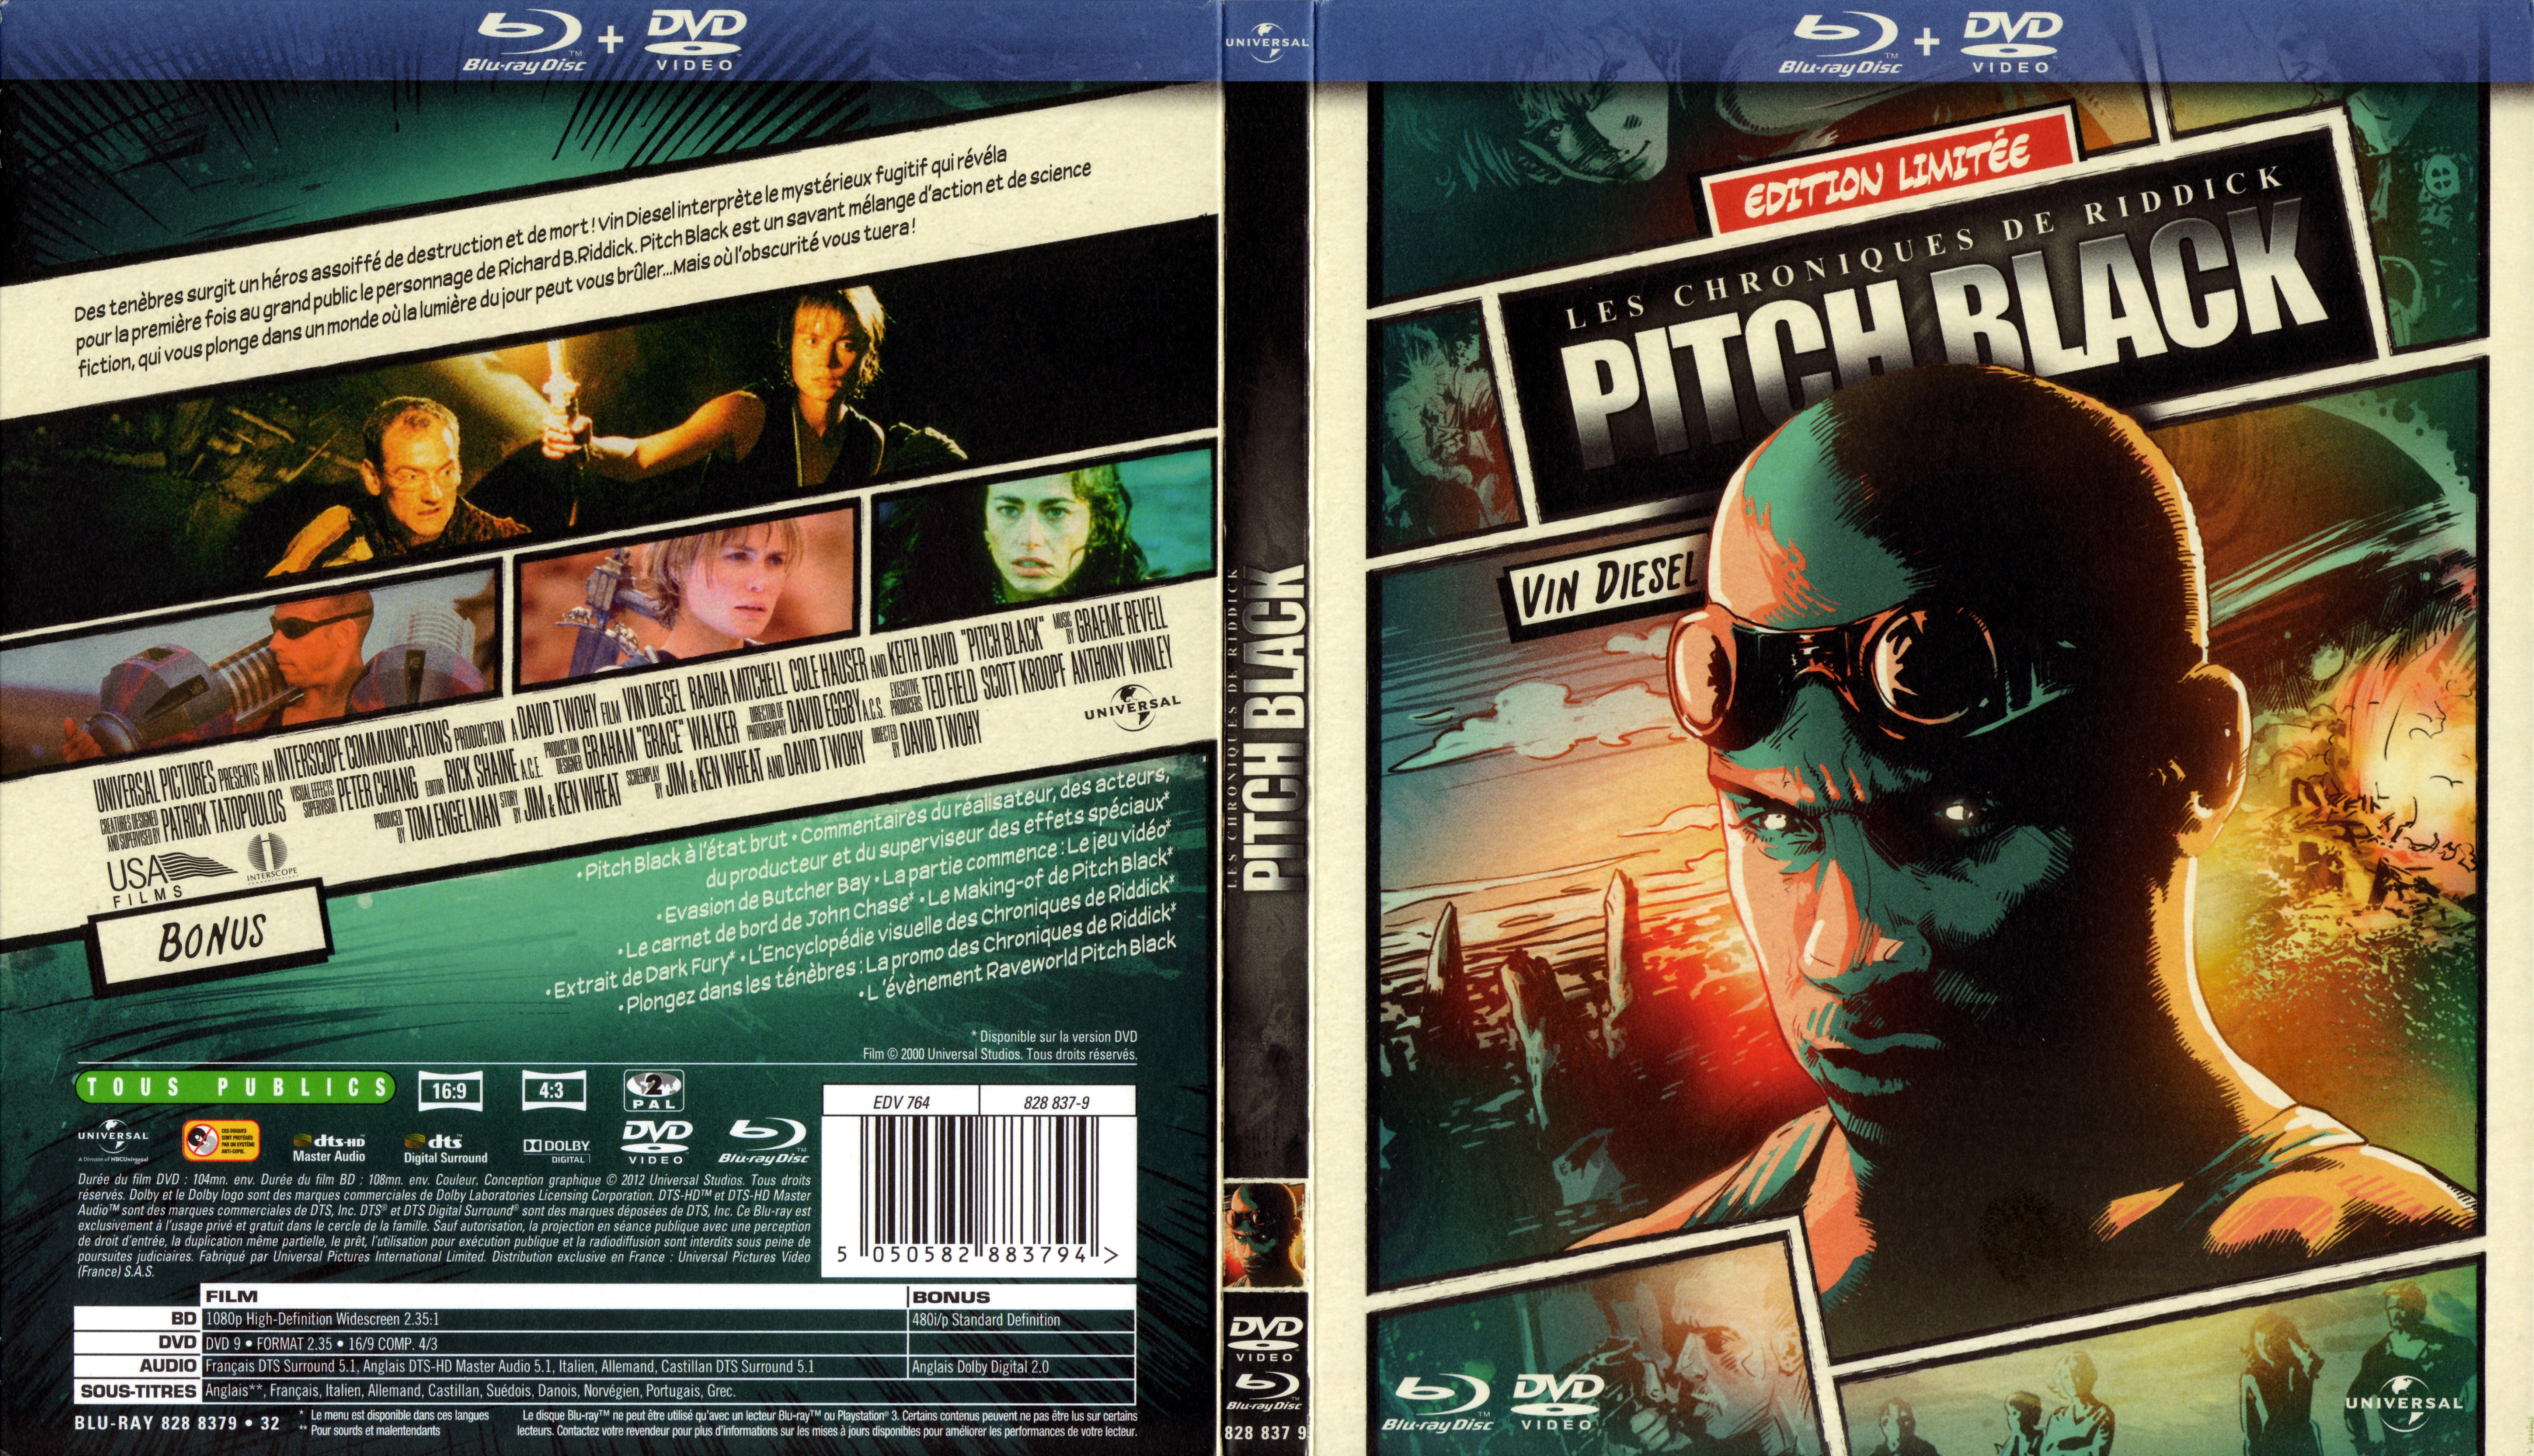 Jaquette DVD Pitch Black (BLU-RAY) v2